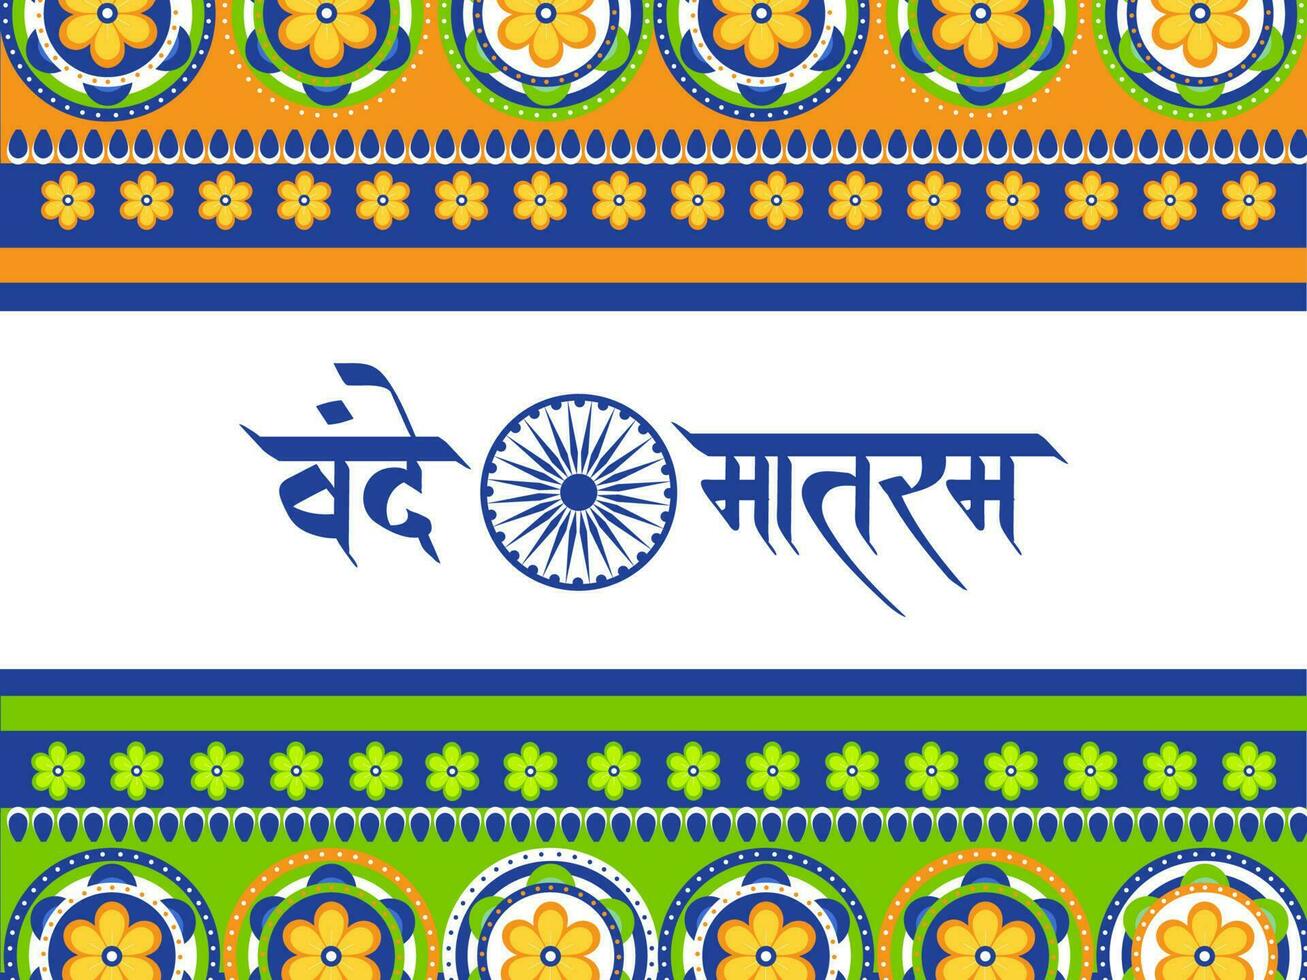 Vande Mataram Hindi Text With Ashoka Wheel Over Floral Pattern Background. vector